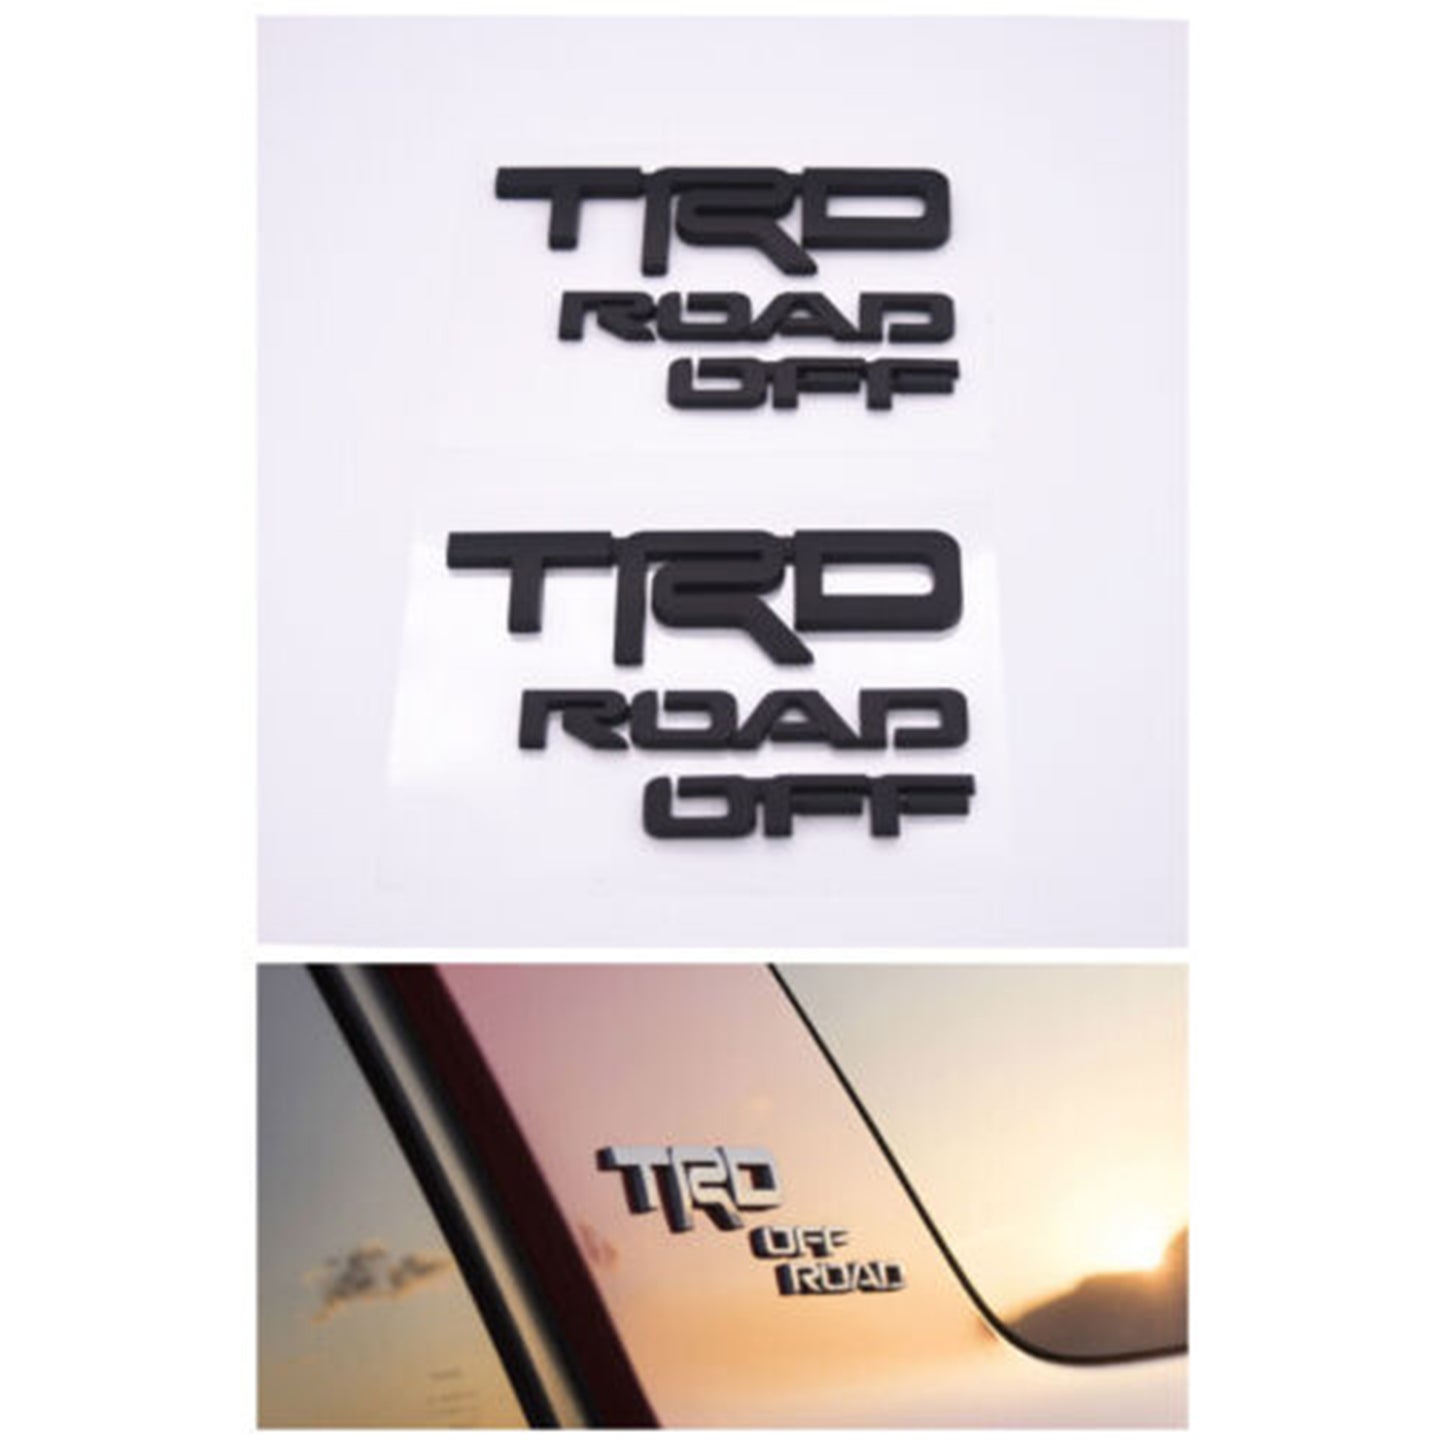 2x Left & Right 4Runner TRD Off Road Badge Side Quarter Emblem - Matte Black